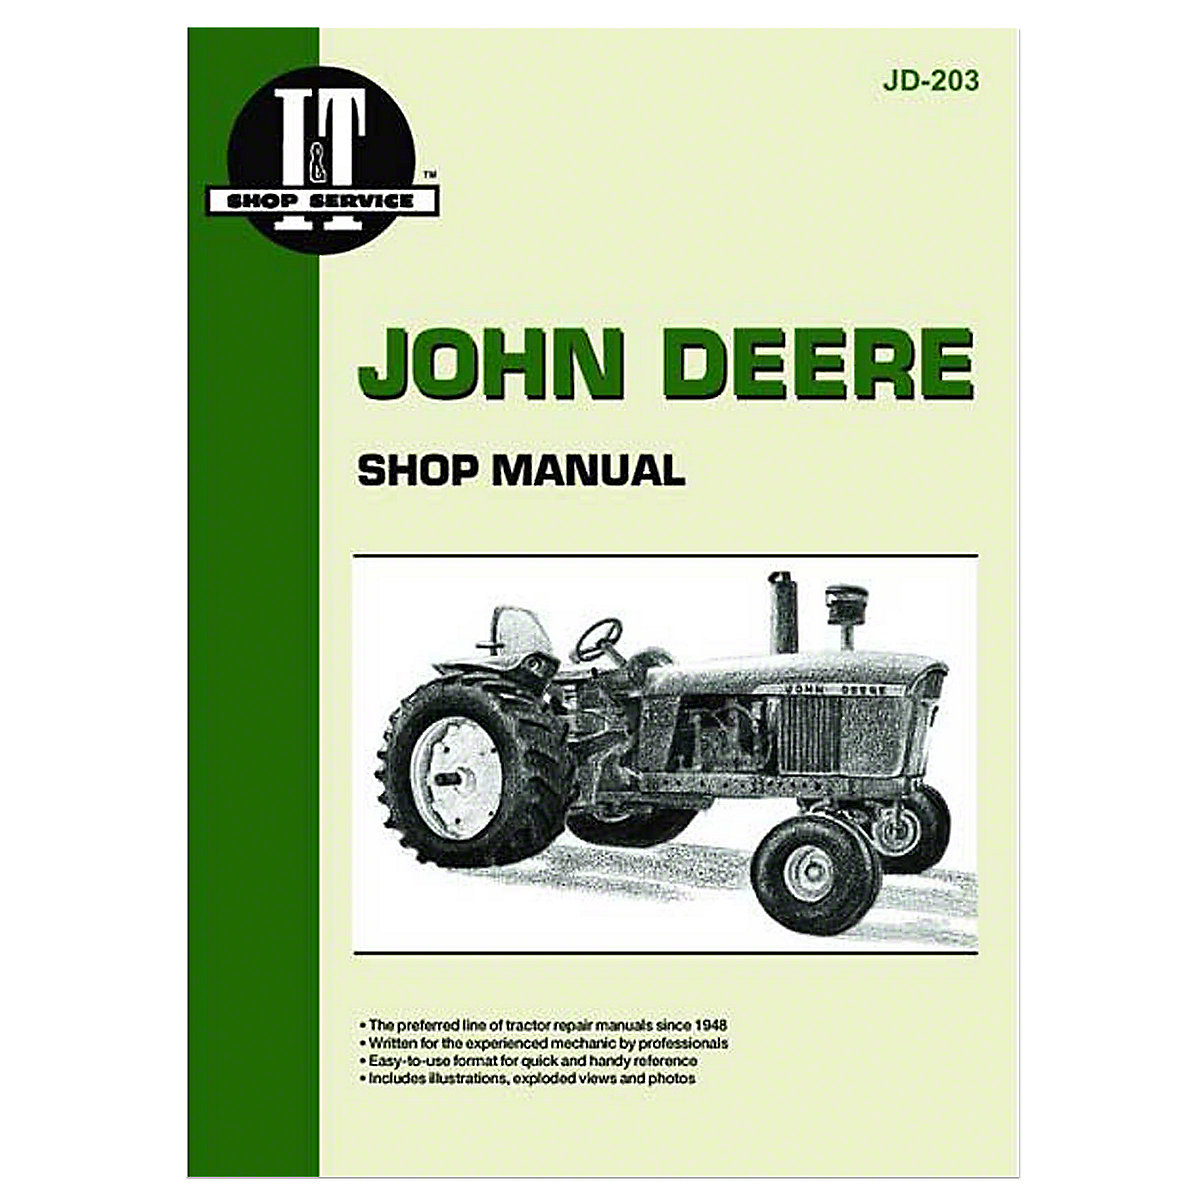 John deere 111 manual pdf